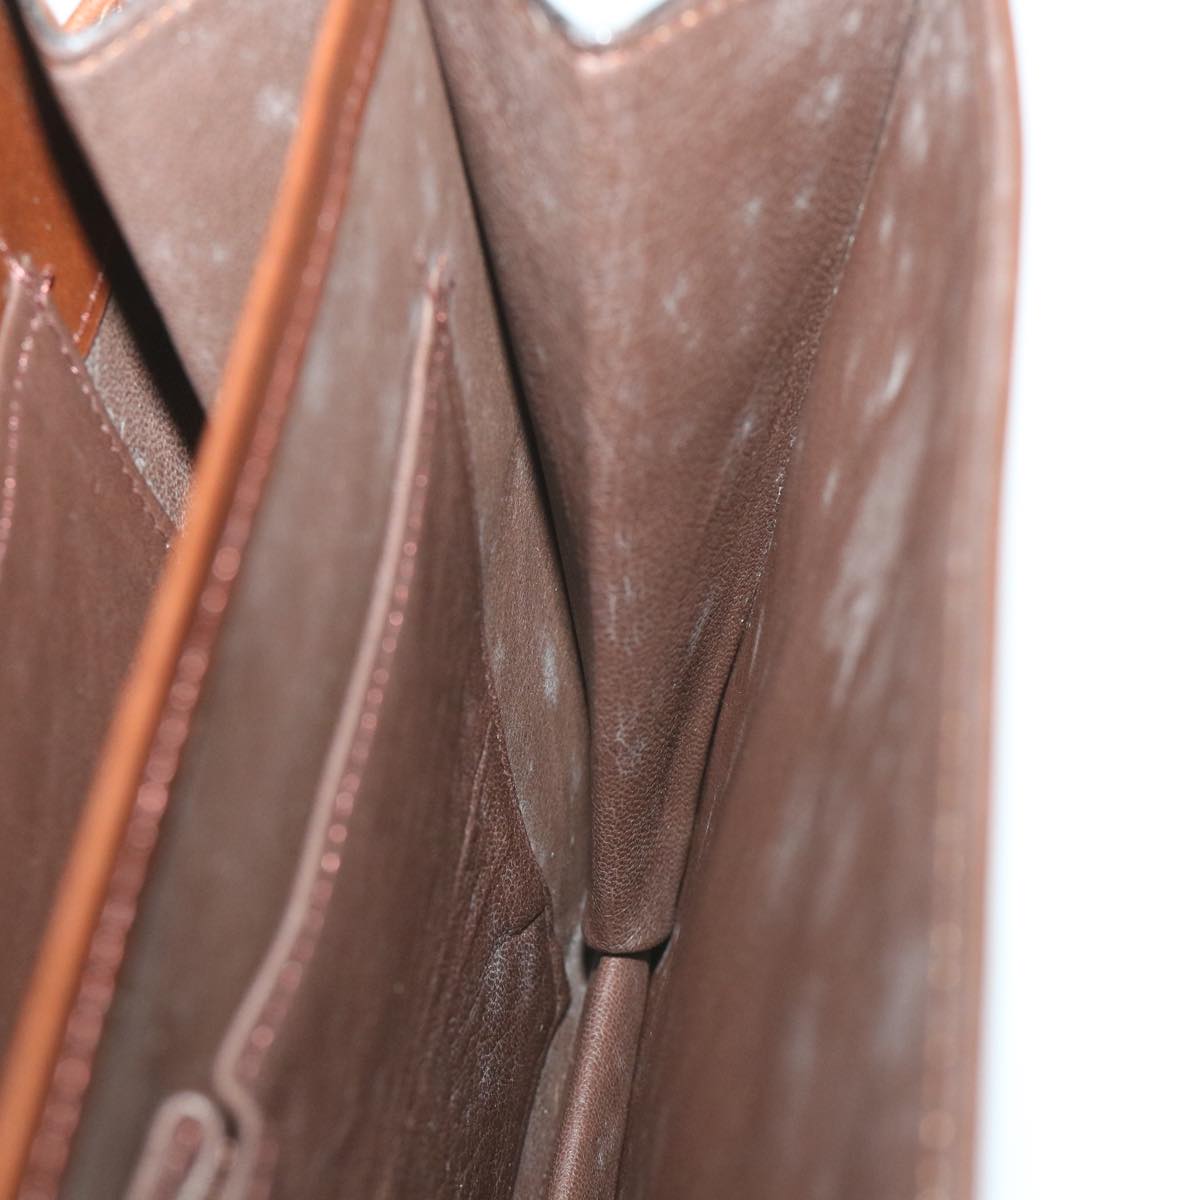 SAINT LAURENT Shoulder Bag Leather Brown Auth bs9993